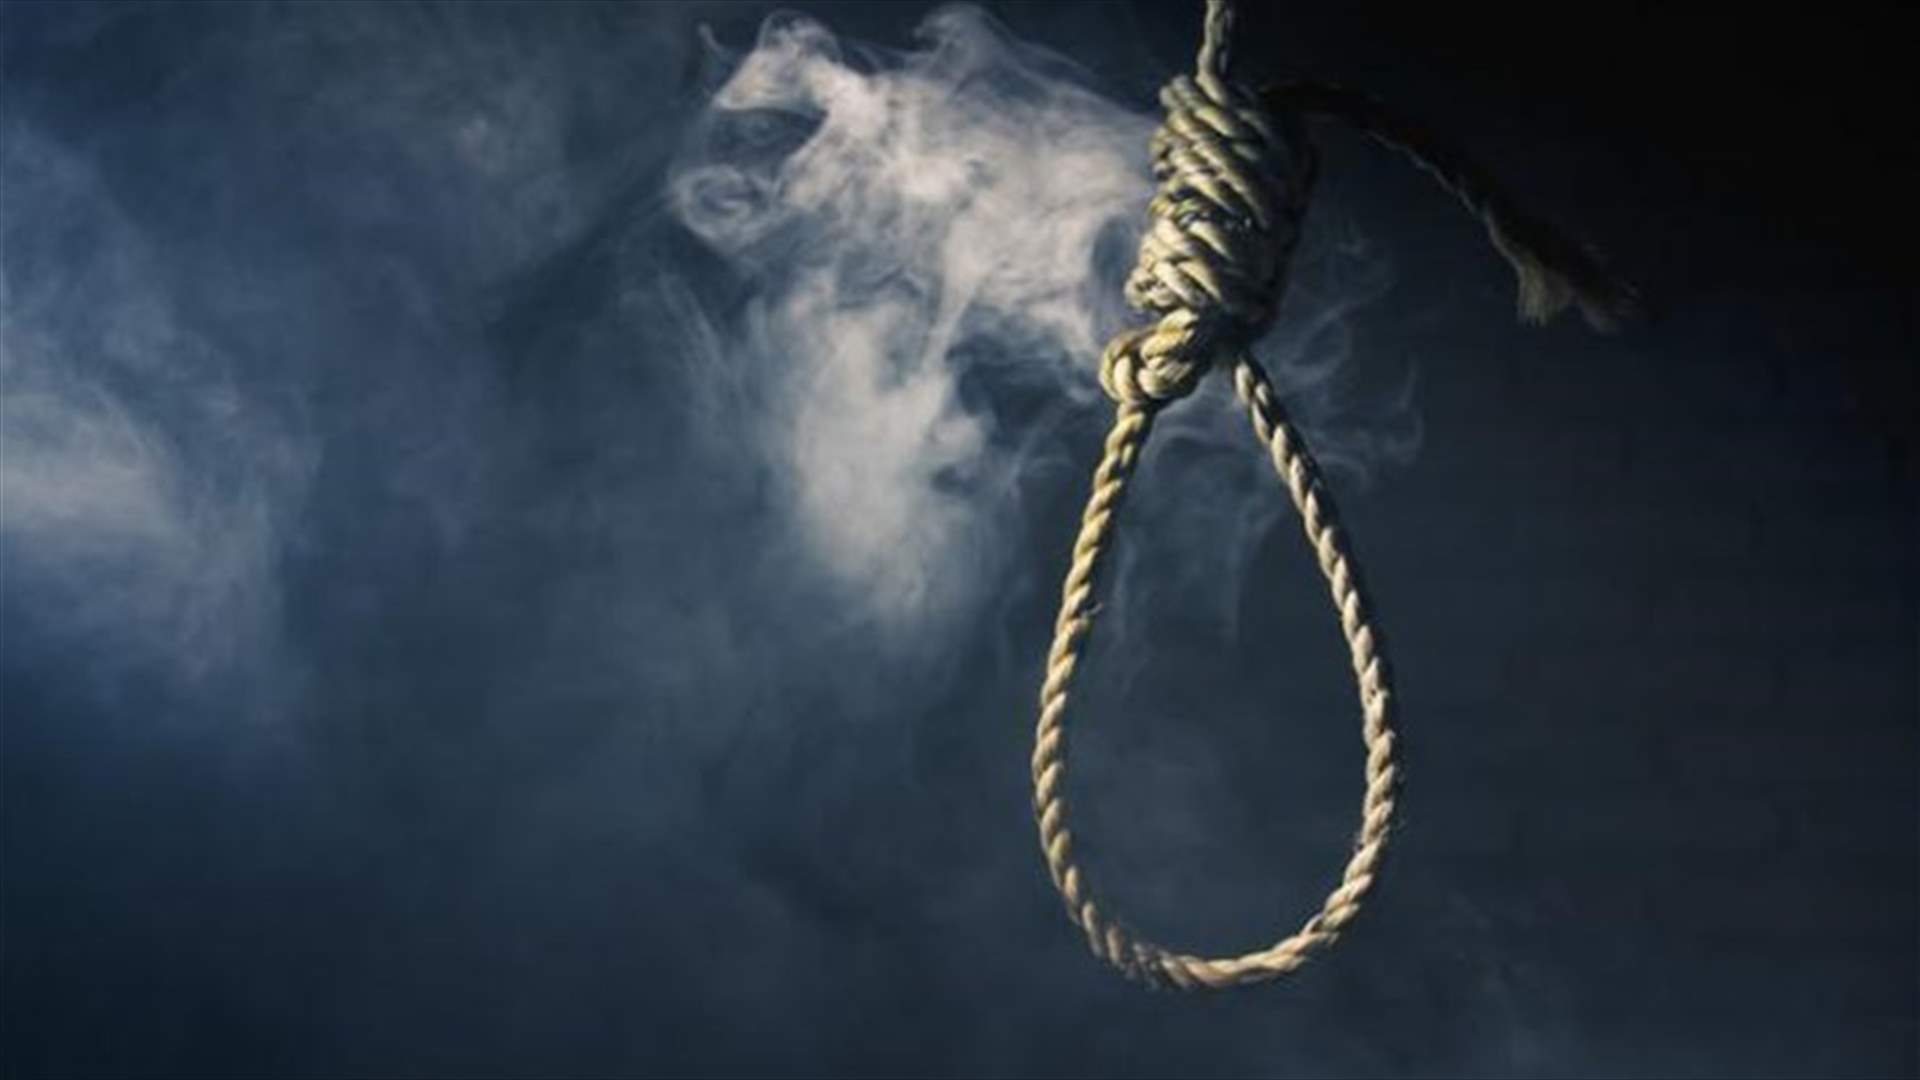 تنفيذ أول حكم إعدام في إيران على صلة بالاحتجاجات